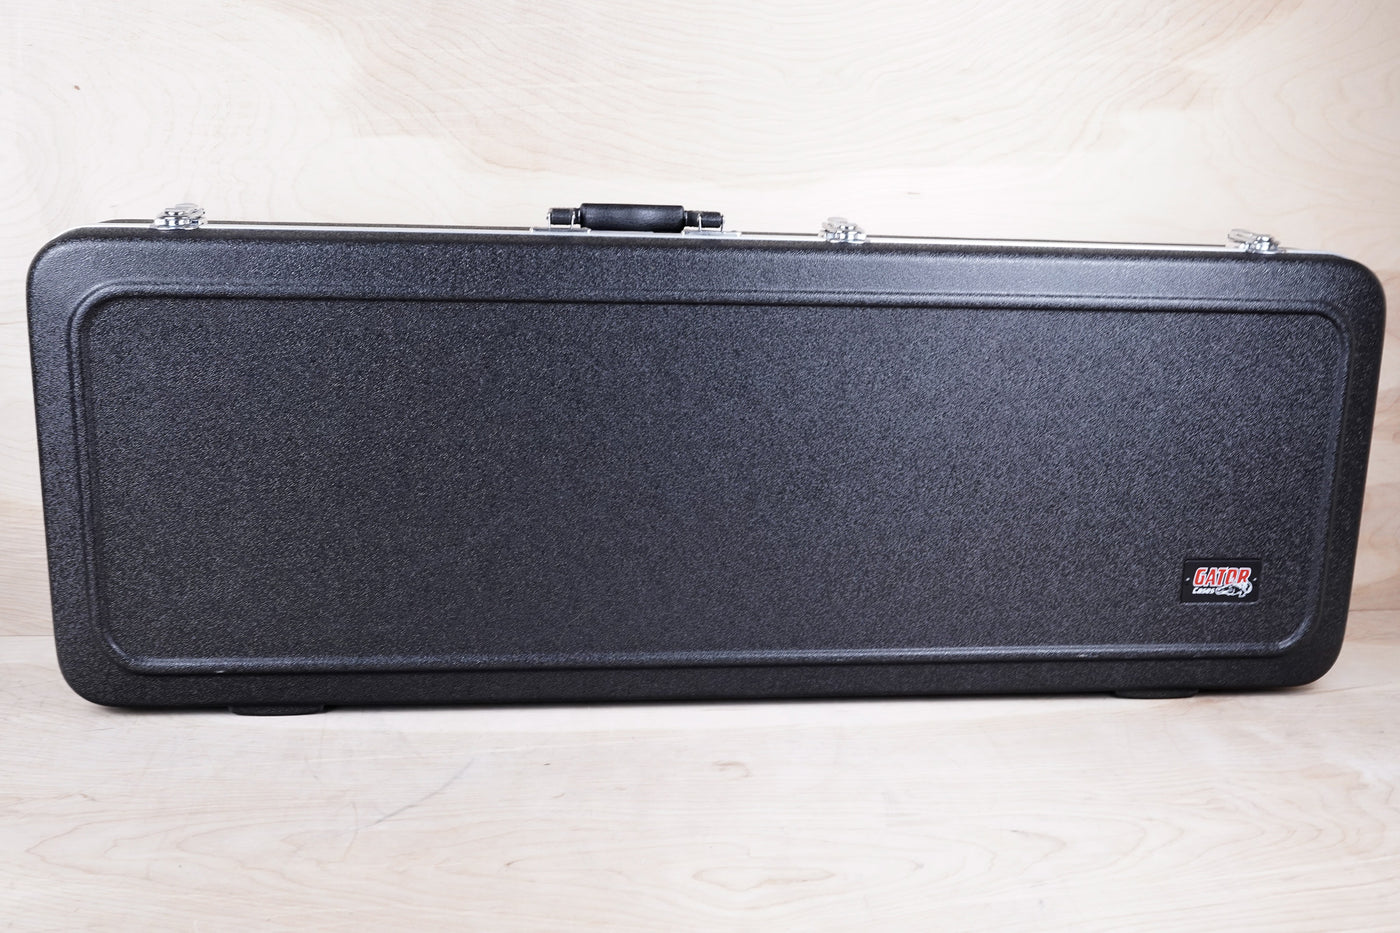 Fender American Special Telecaster 2015 3-Color Sunburst Rosewood Fretboard w/ Hard Case